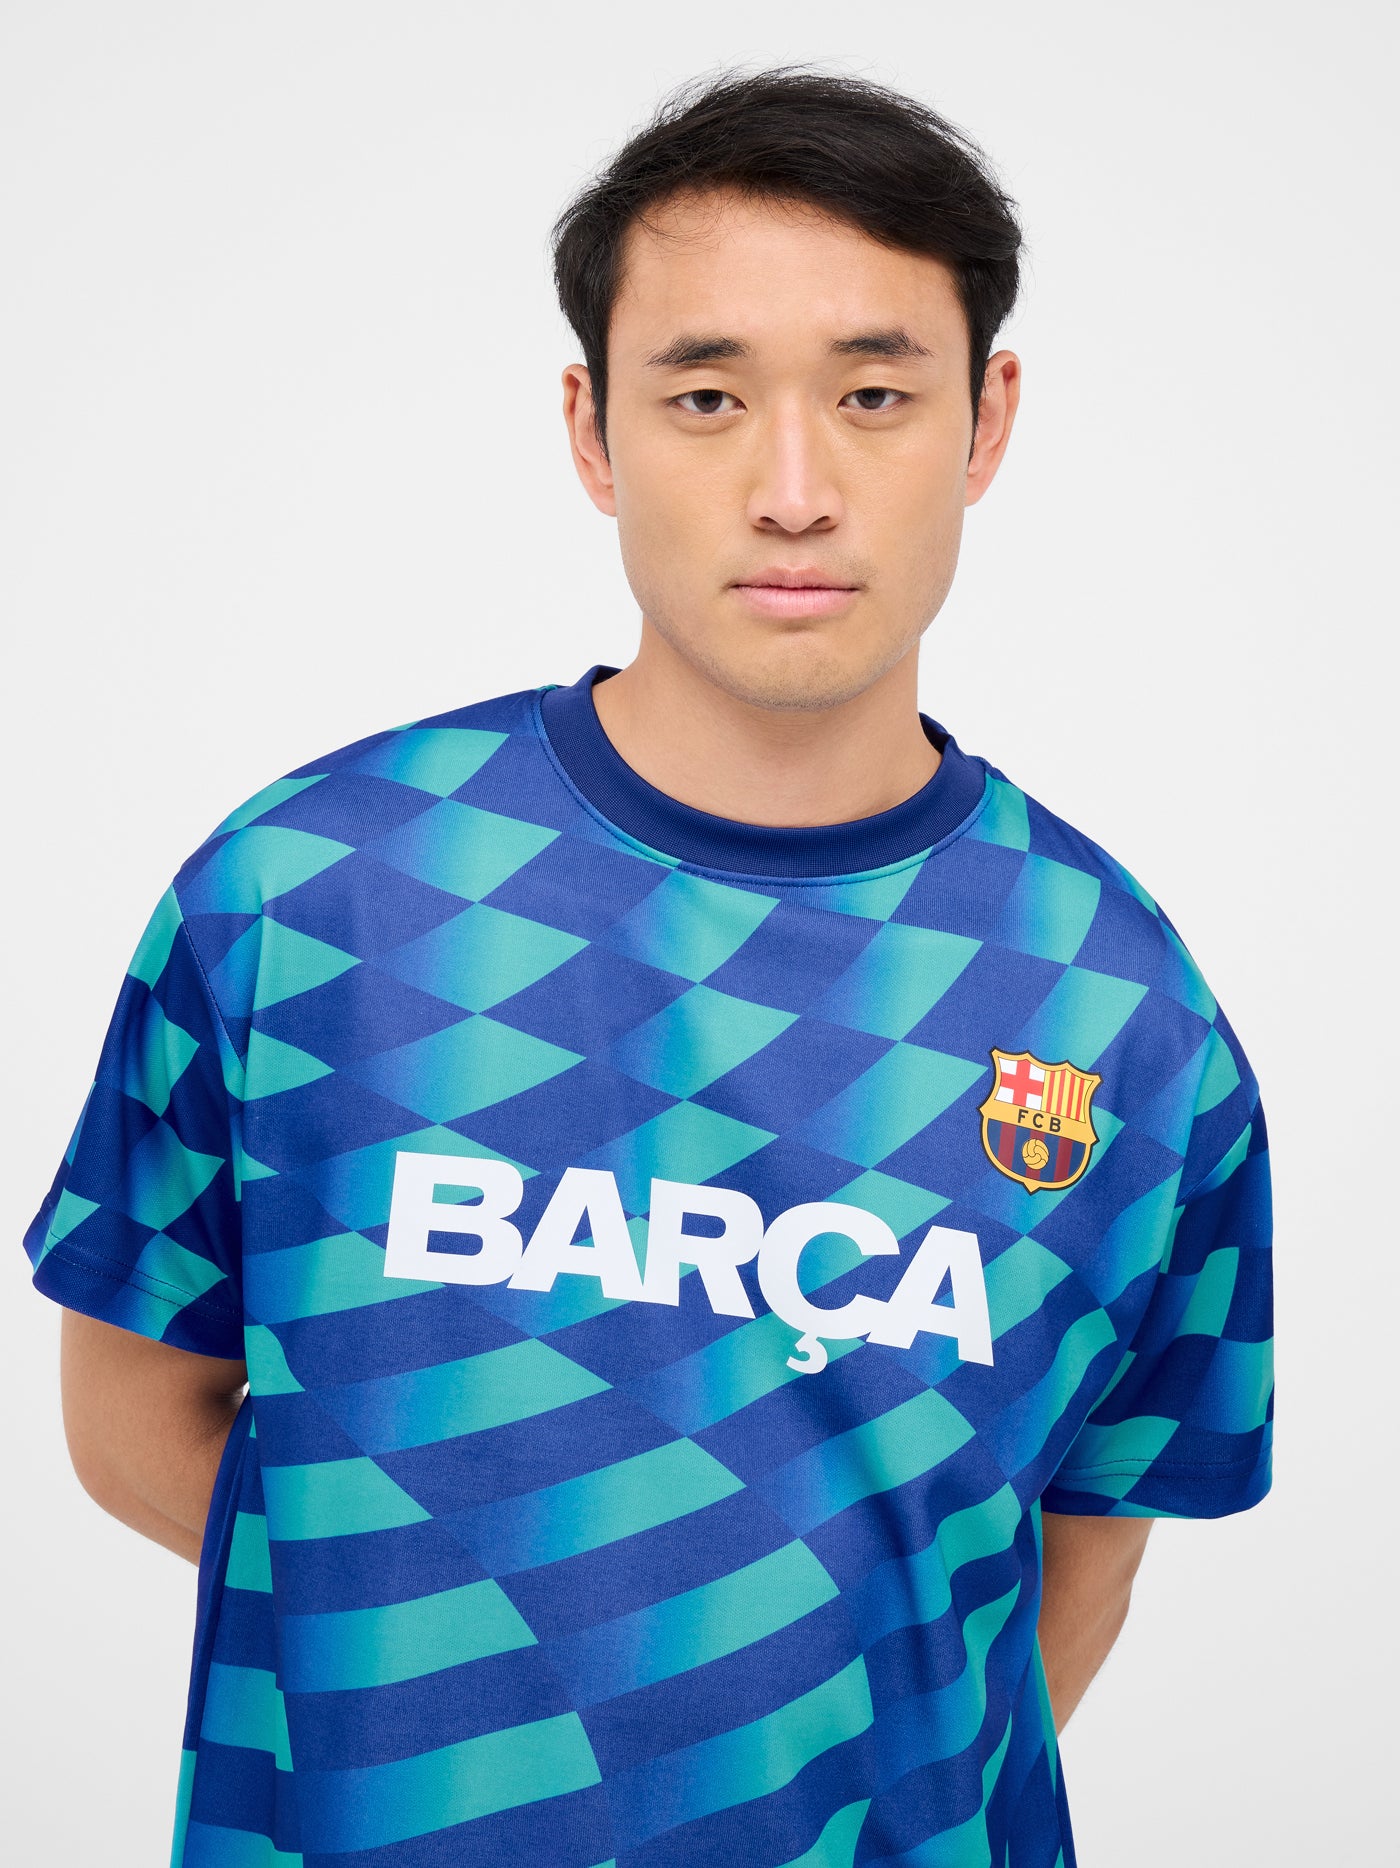 Camiseta estampada turquesa escudo Barça